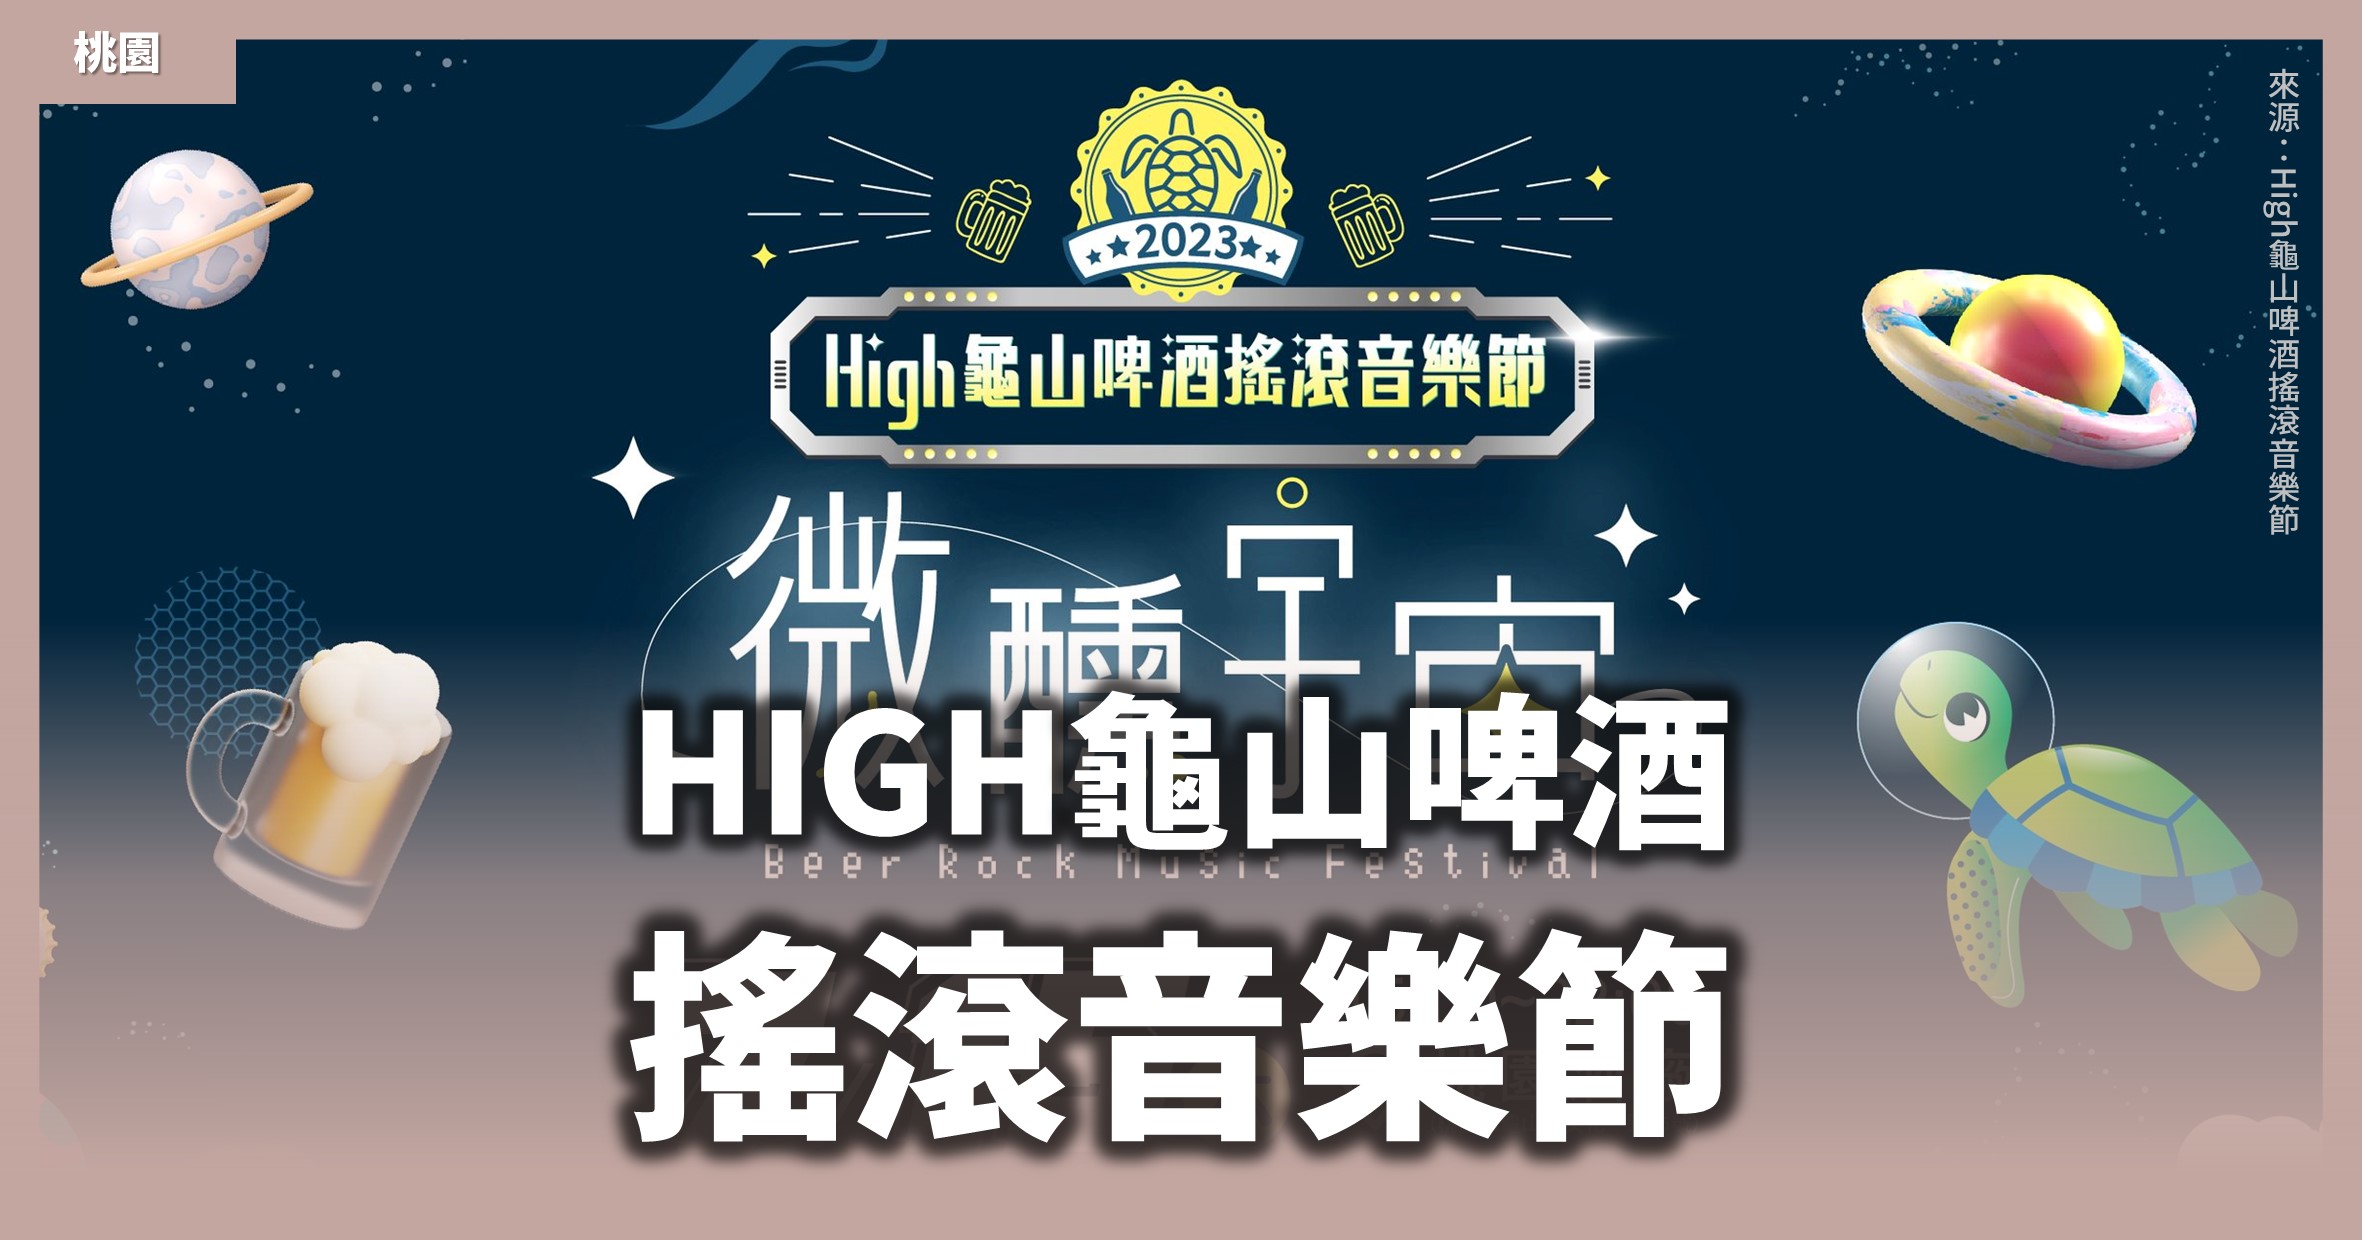 桃園活動》High龜山啤酒搖滾音樂節「微醺宇宙」：2場探險、5大主題、7組藝人卡司 @漫步時光